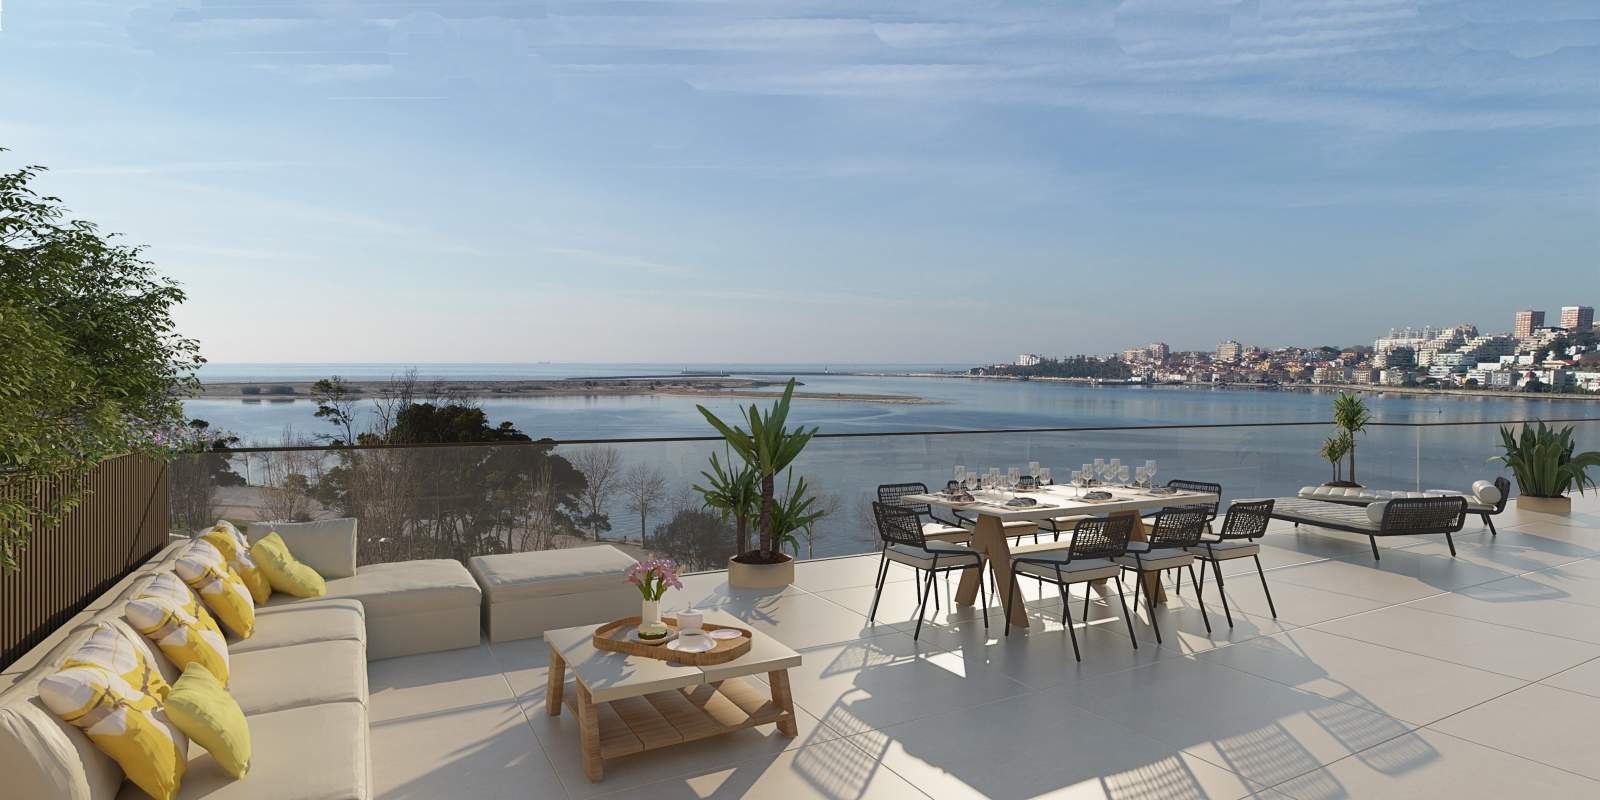 Piso en venta con terraza, en exclusivo condominio, V. N. Gaia, Porto, Portugal_176126